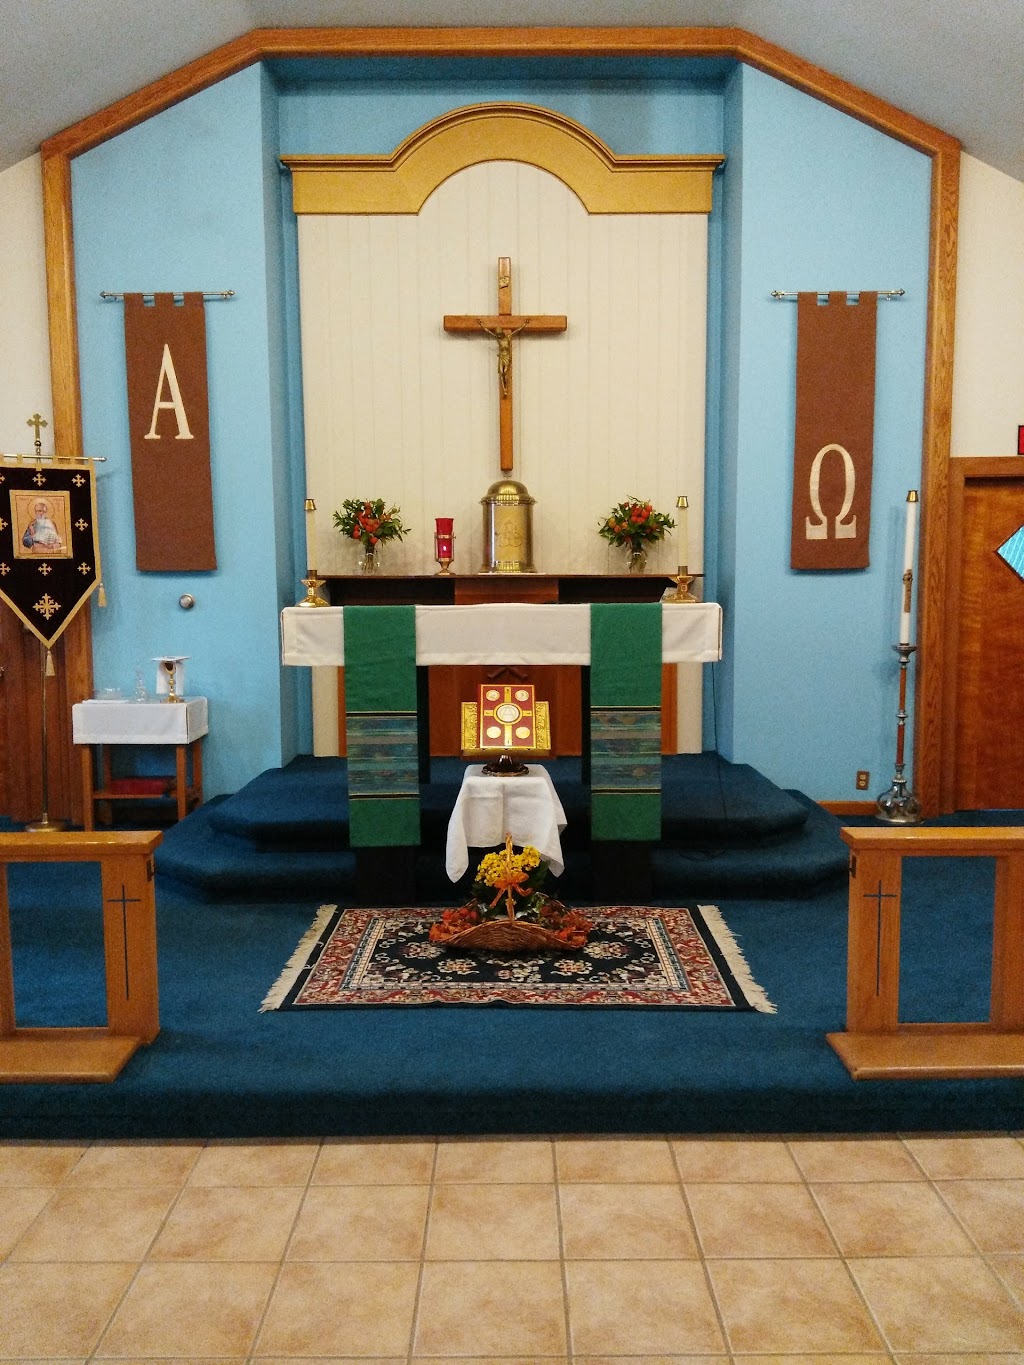 St John the Evangelist Catholic Church | 34 S Main St, Bainbridge, NY 13733 | Phone: (607) 967-4481